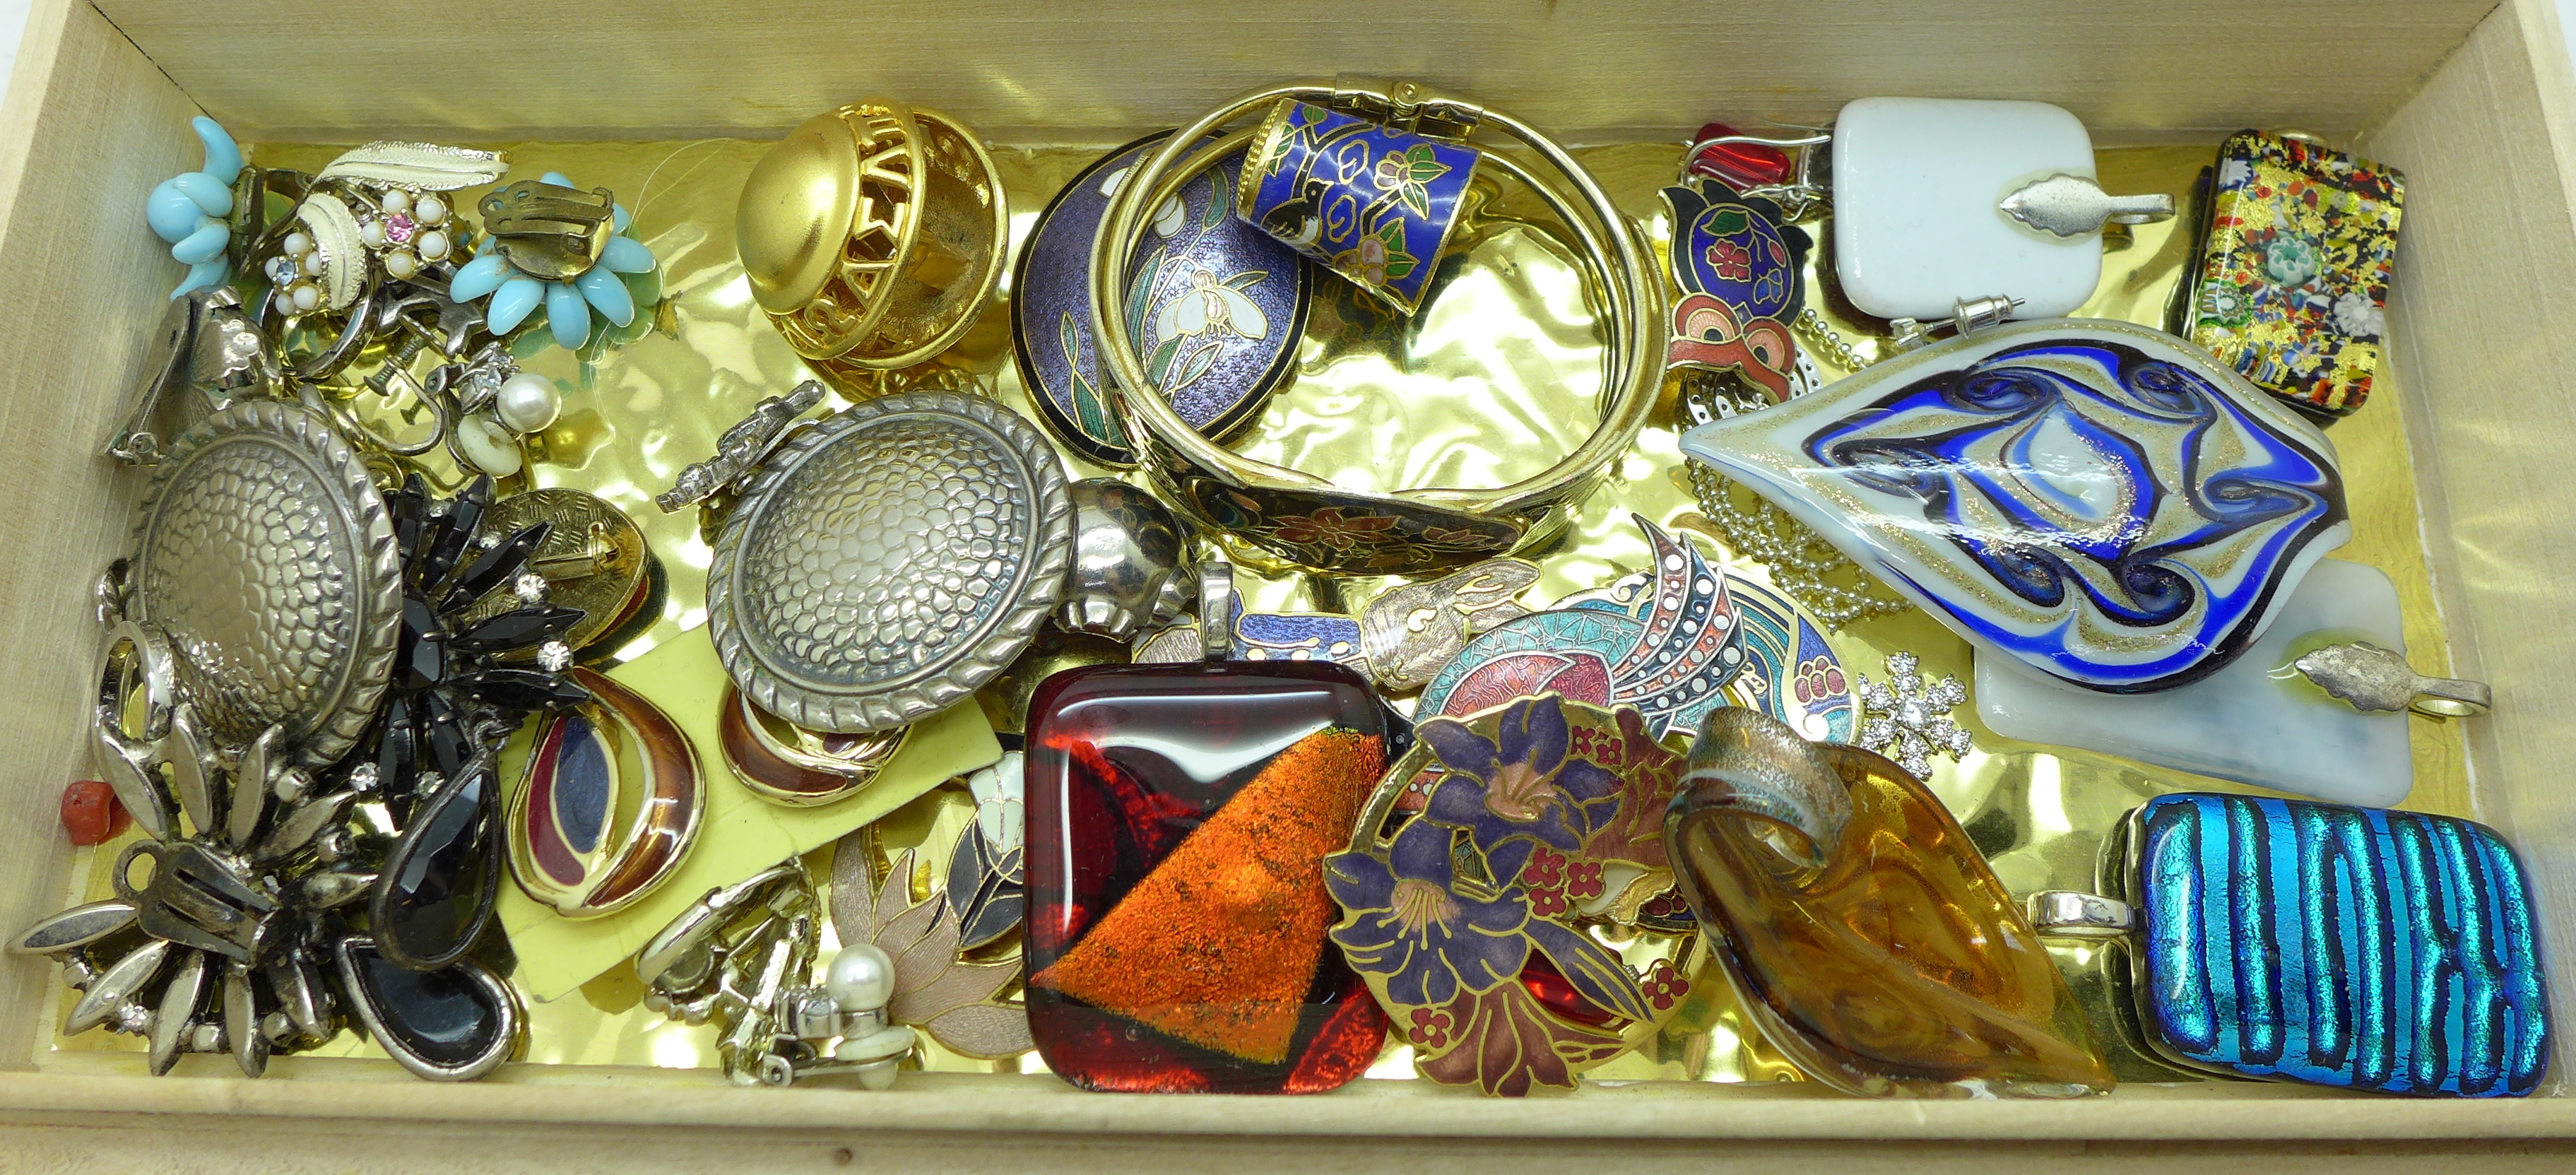 Enamel jewellery, Murano glass pendants, earrings, etc. - Image 2 of 9